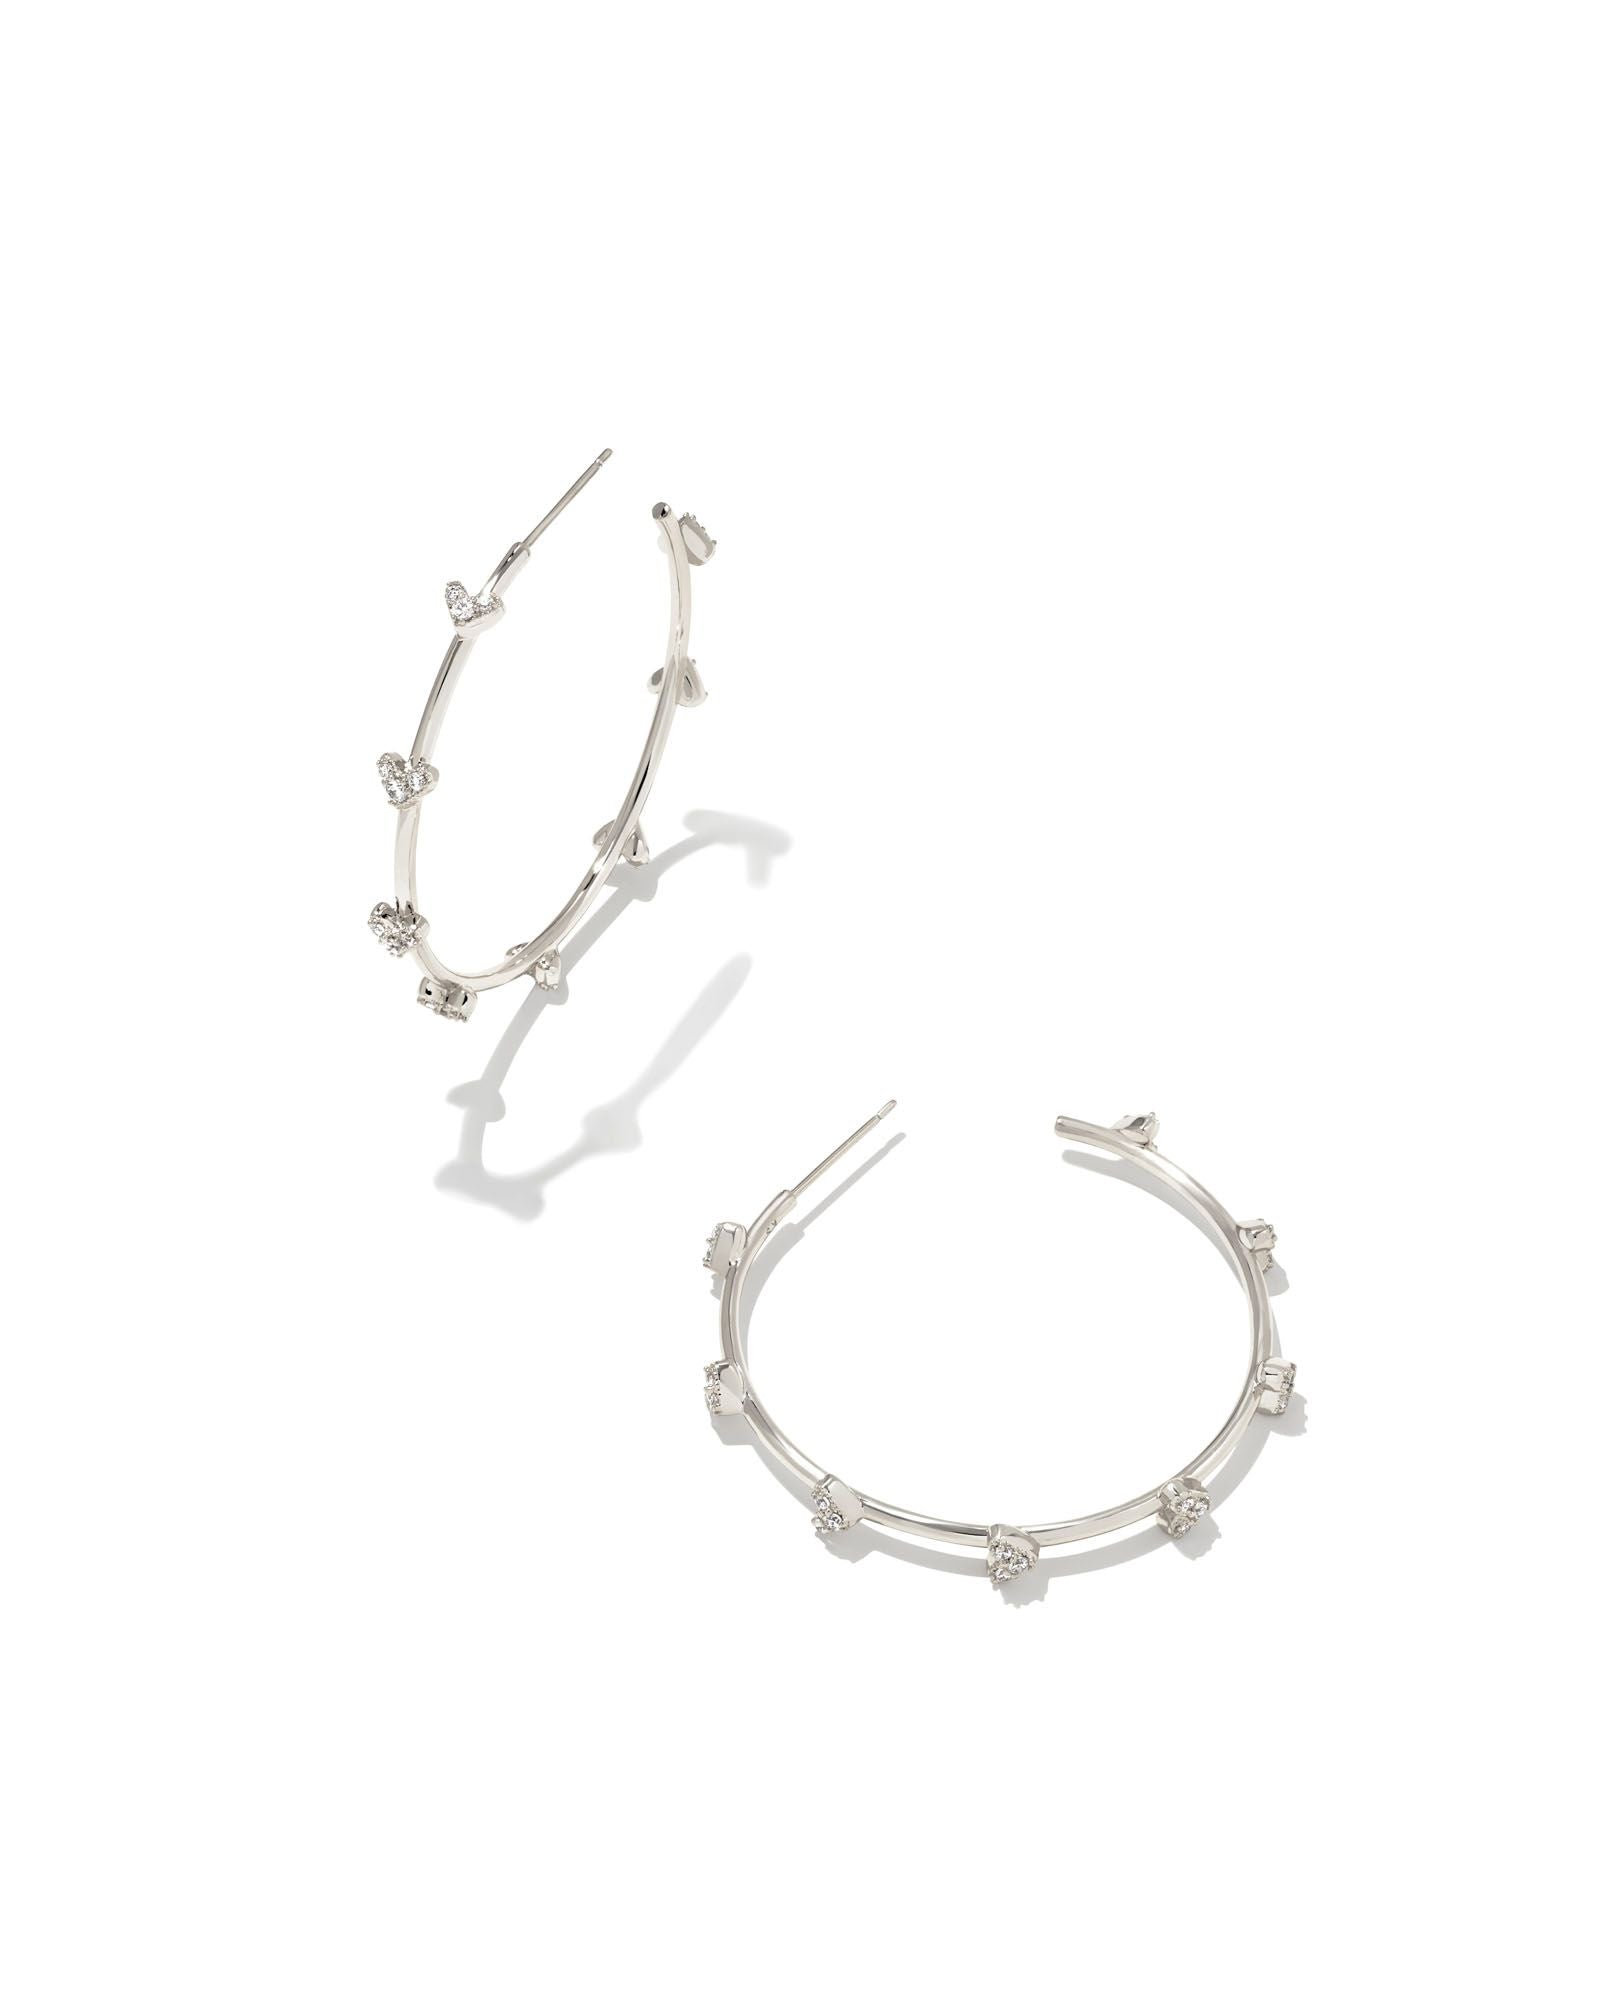 Kendra Scott Haven Heart Hoop Earrings Rhodium White Crystal-Earrings-Kendra Scott-E1999RHD-The Twisted Chandelier